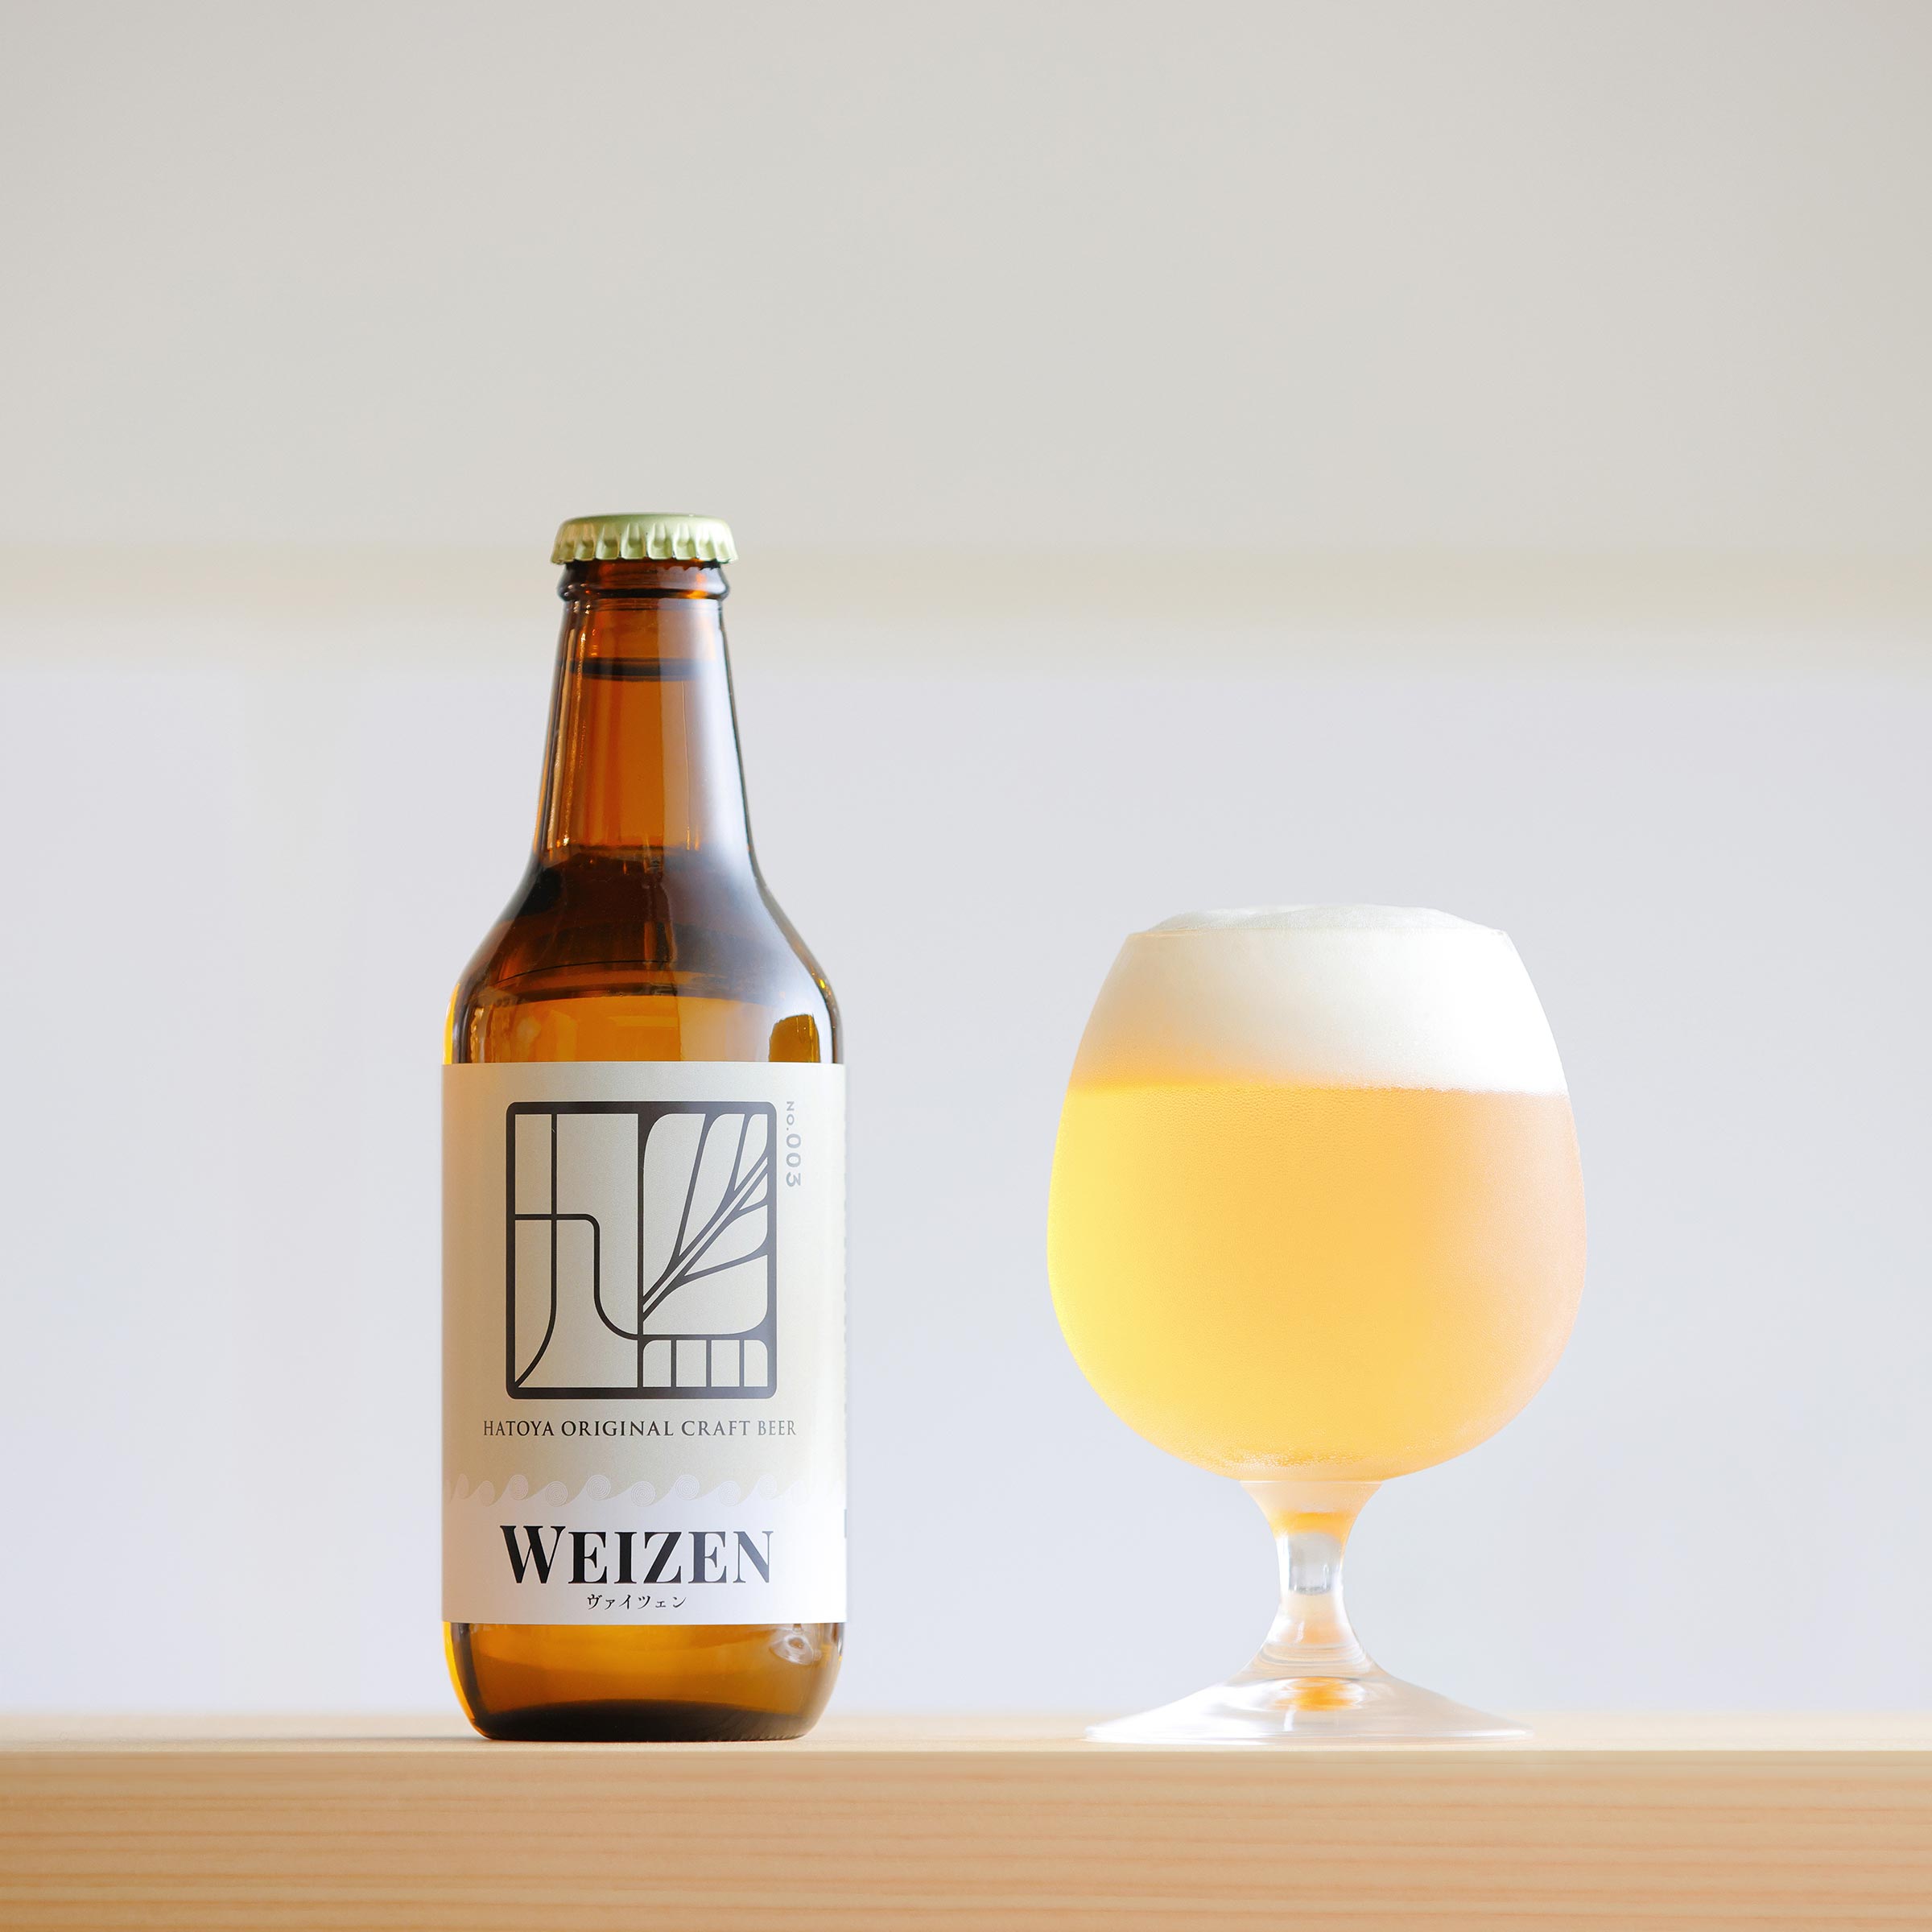 ヴァイツェンのビールボトルと、グラスに注いだビールの写真